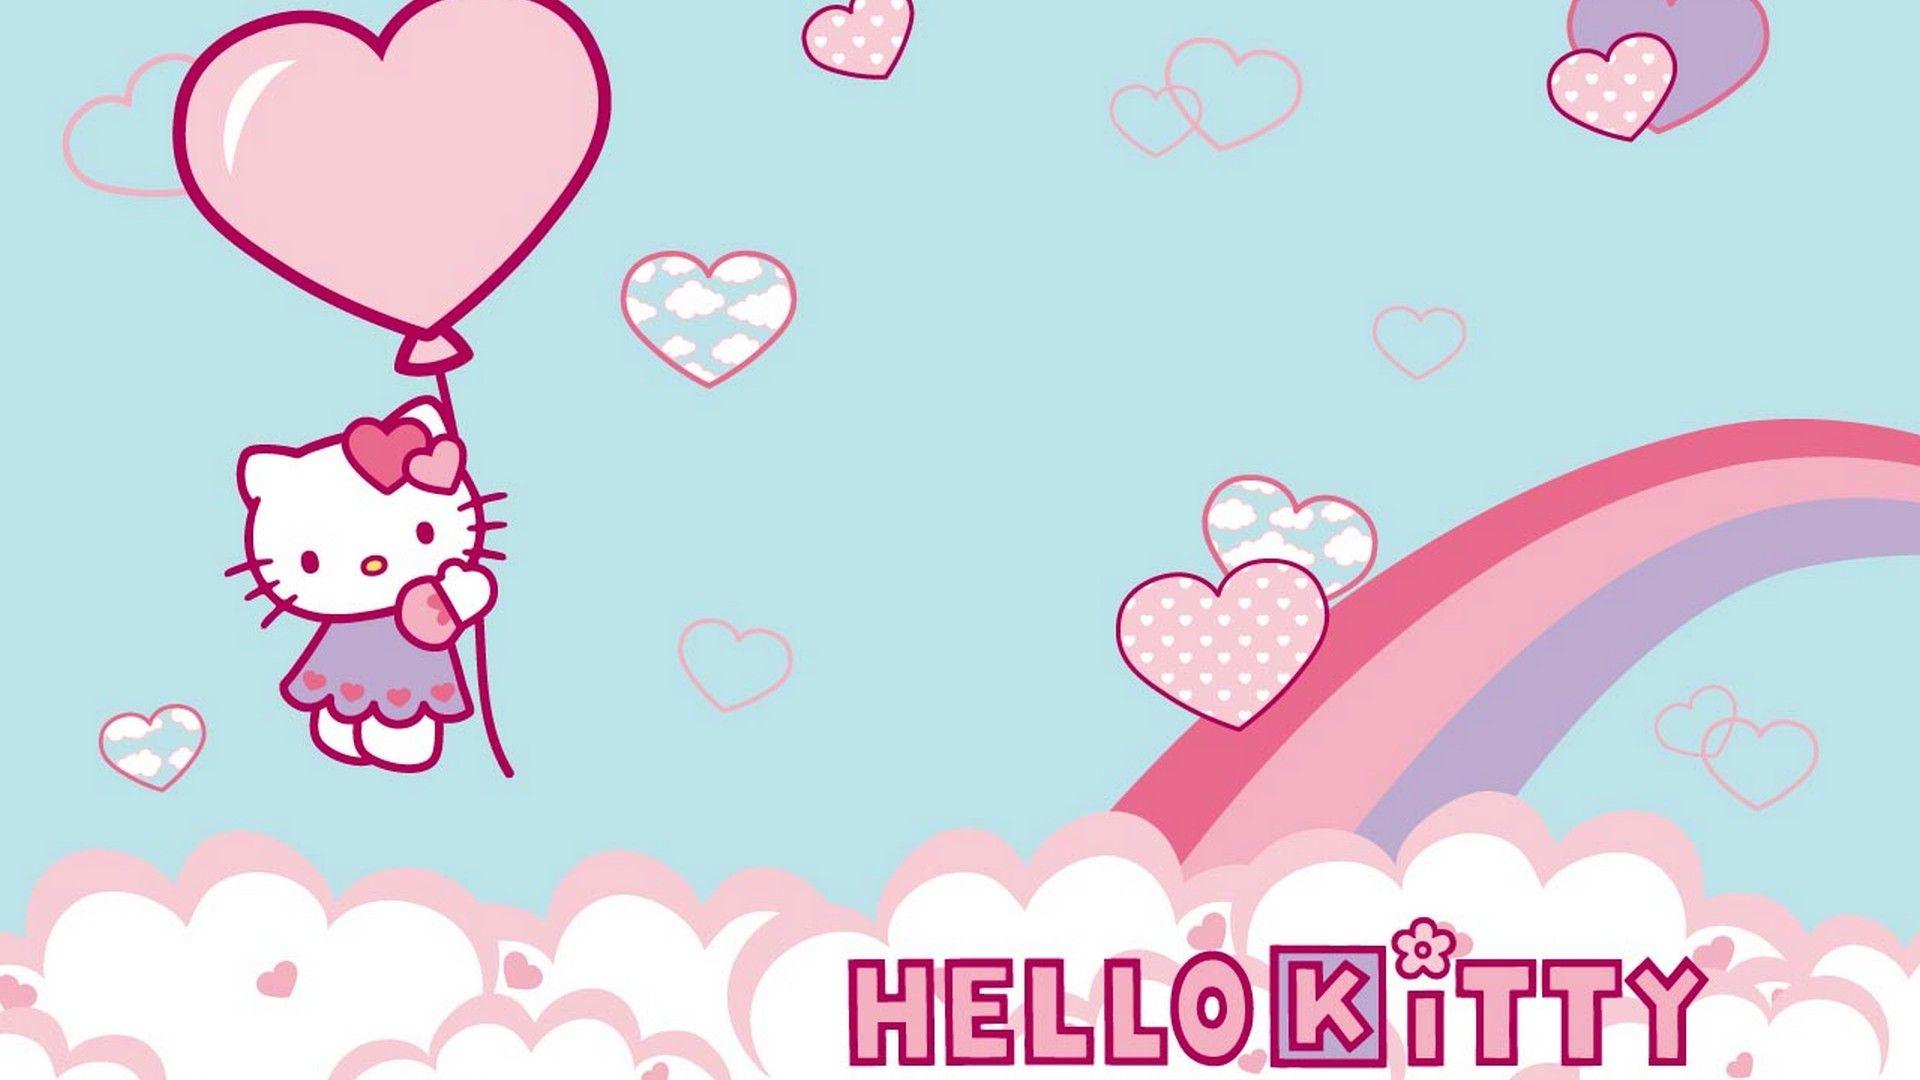 Wallpaper Hello Kitty Image Desktop. Best HD Wallpaper